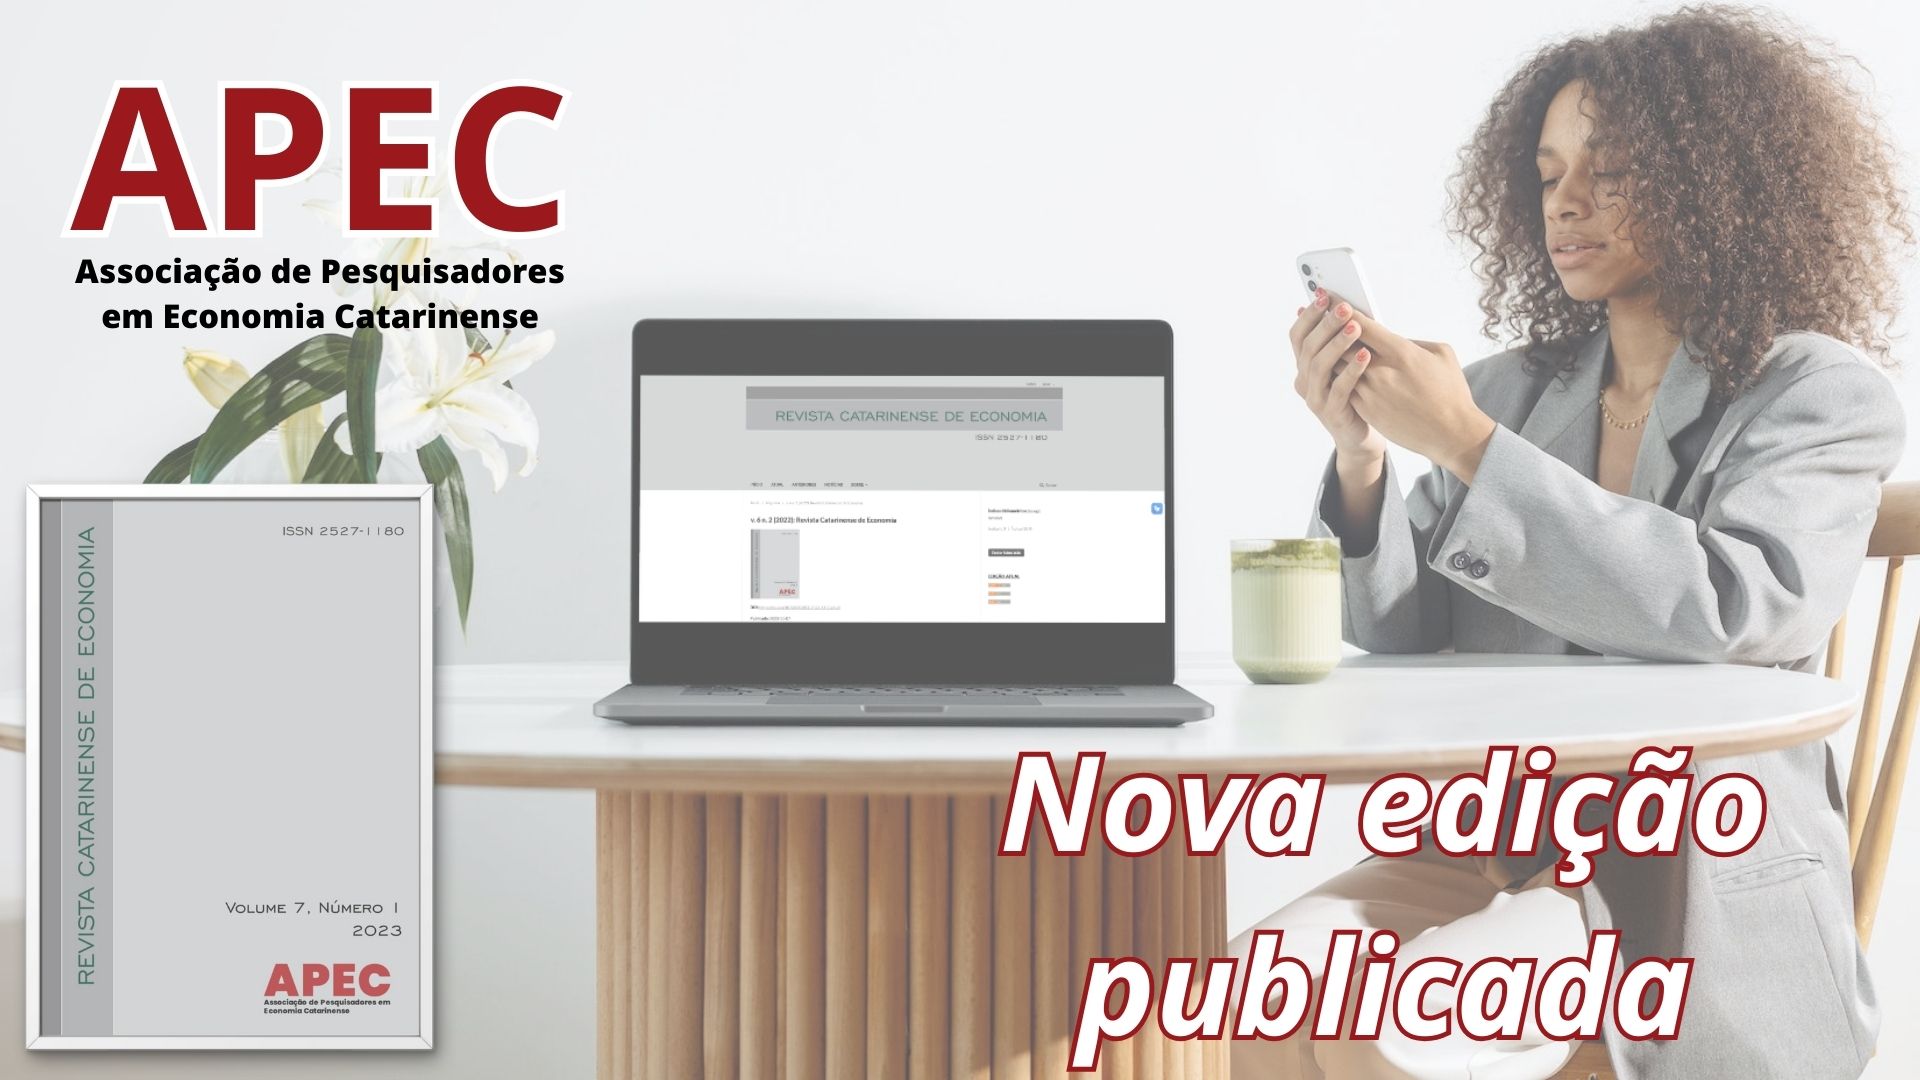 Revista Catarinense de Economia - Nova edição publicada